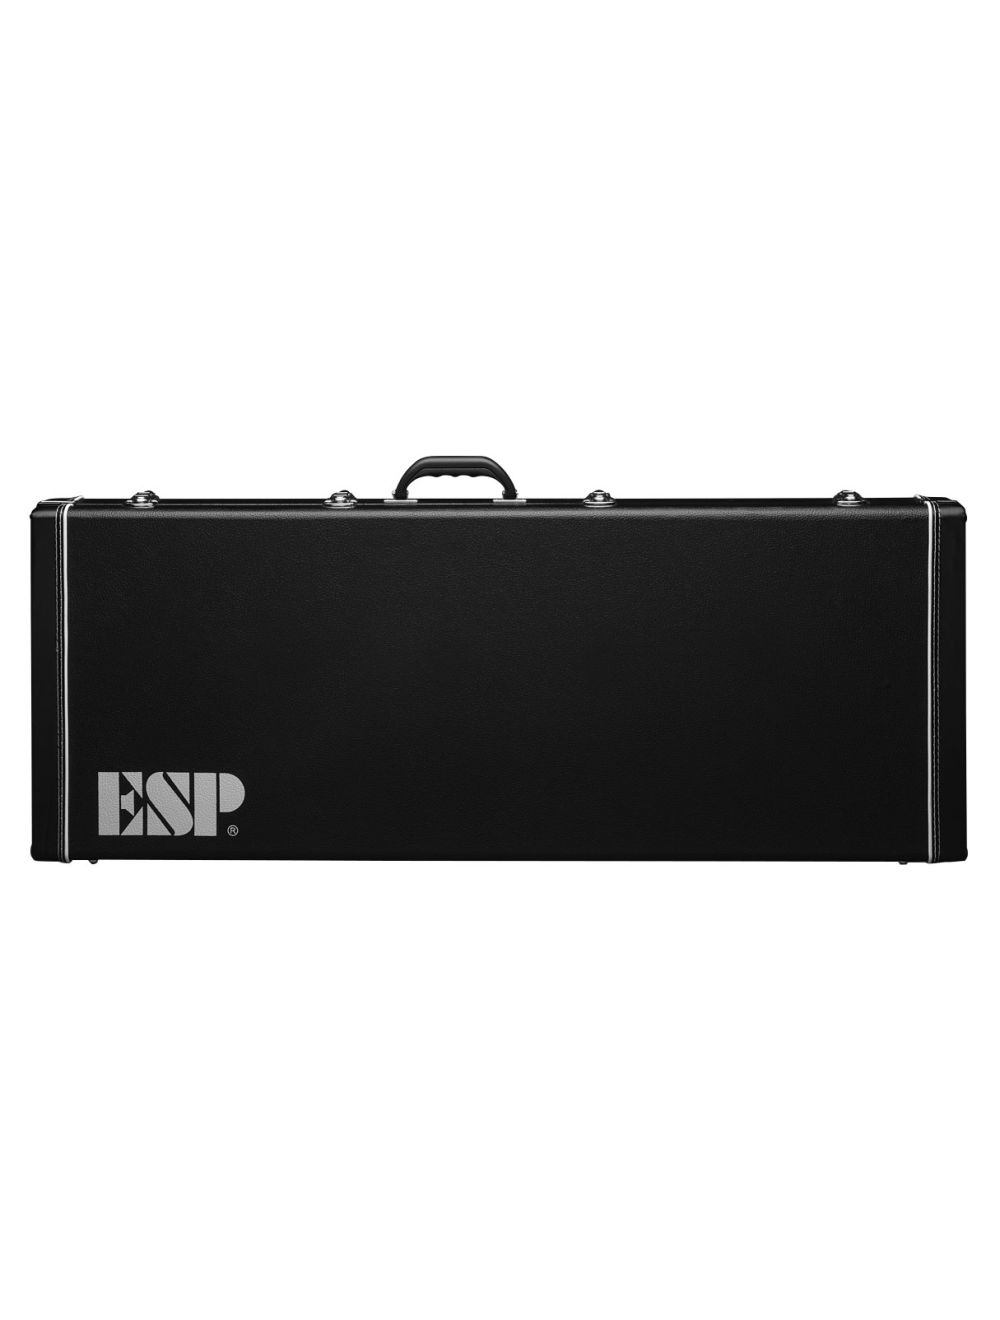 ESP Mystique Form Fit Case Black 